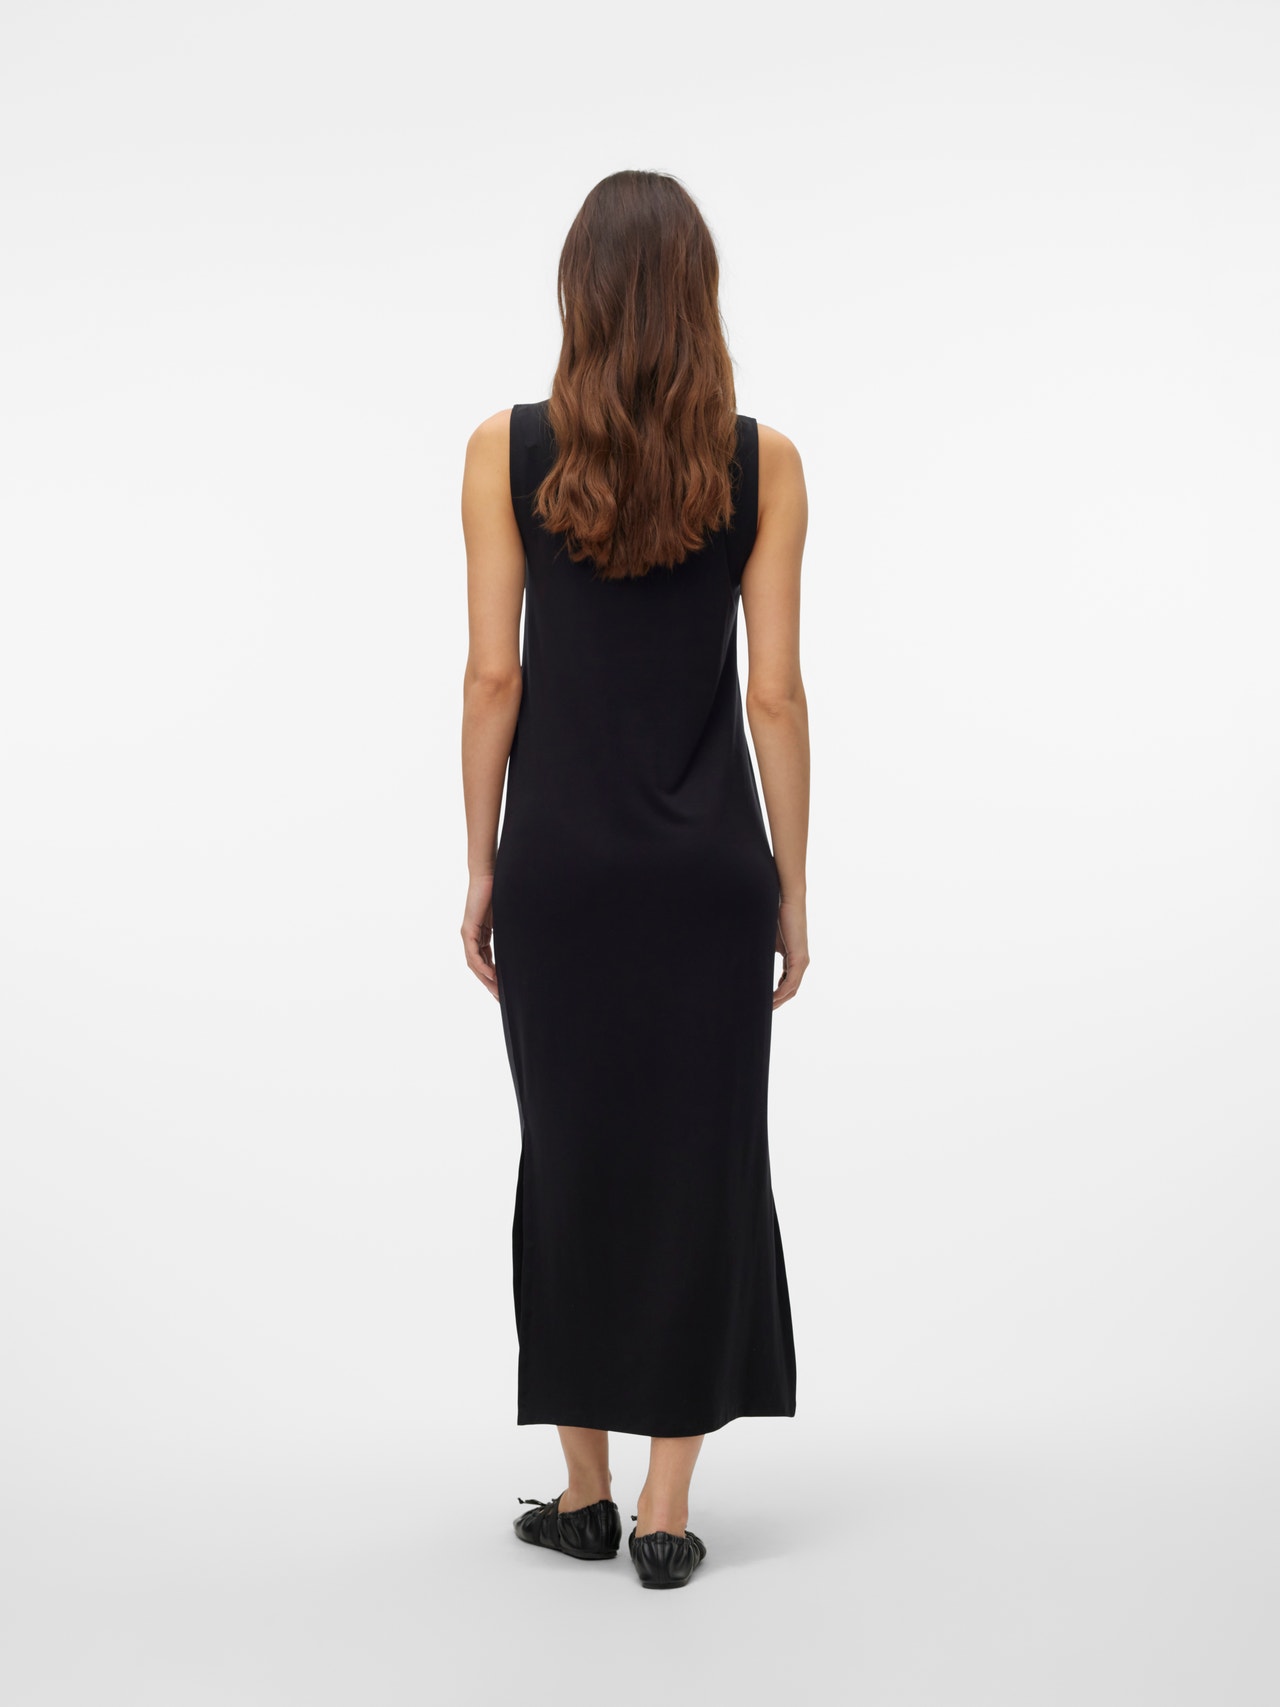 Vero Moda VMFIONA Long dress -Black - 10290338